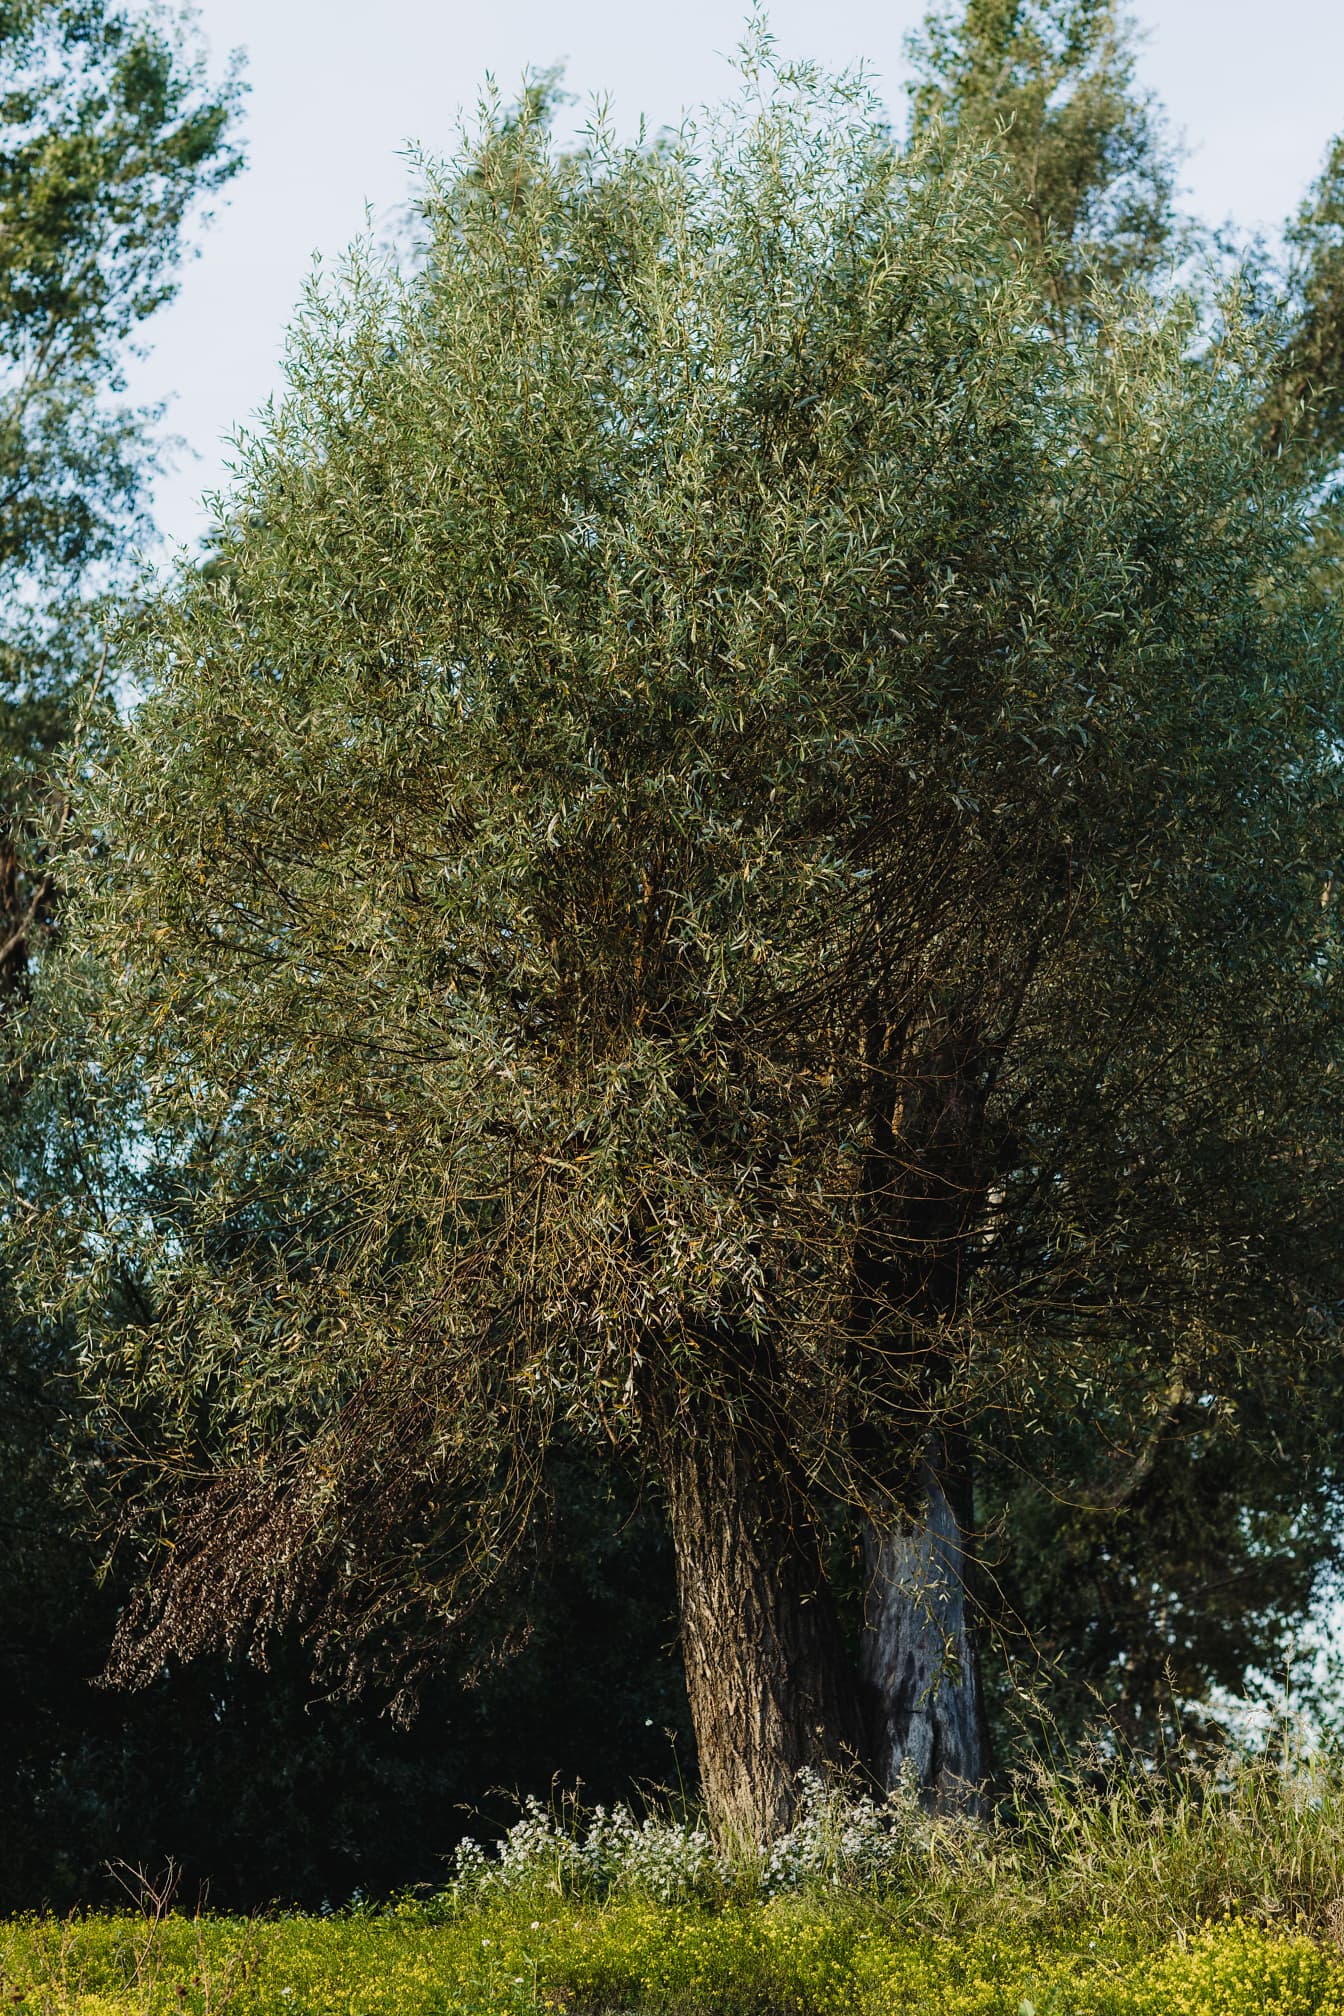 Thân cây liễu già (Salix) vào mùa xuân